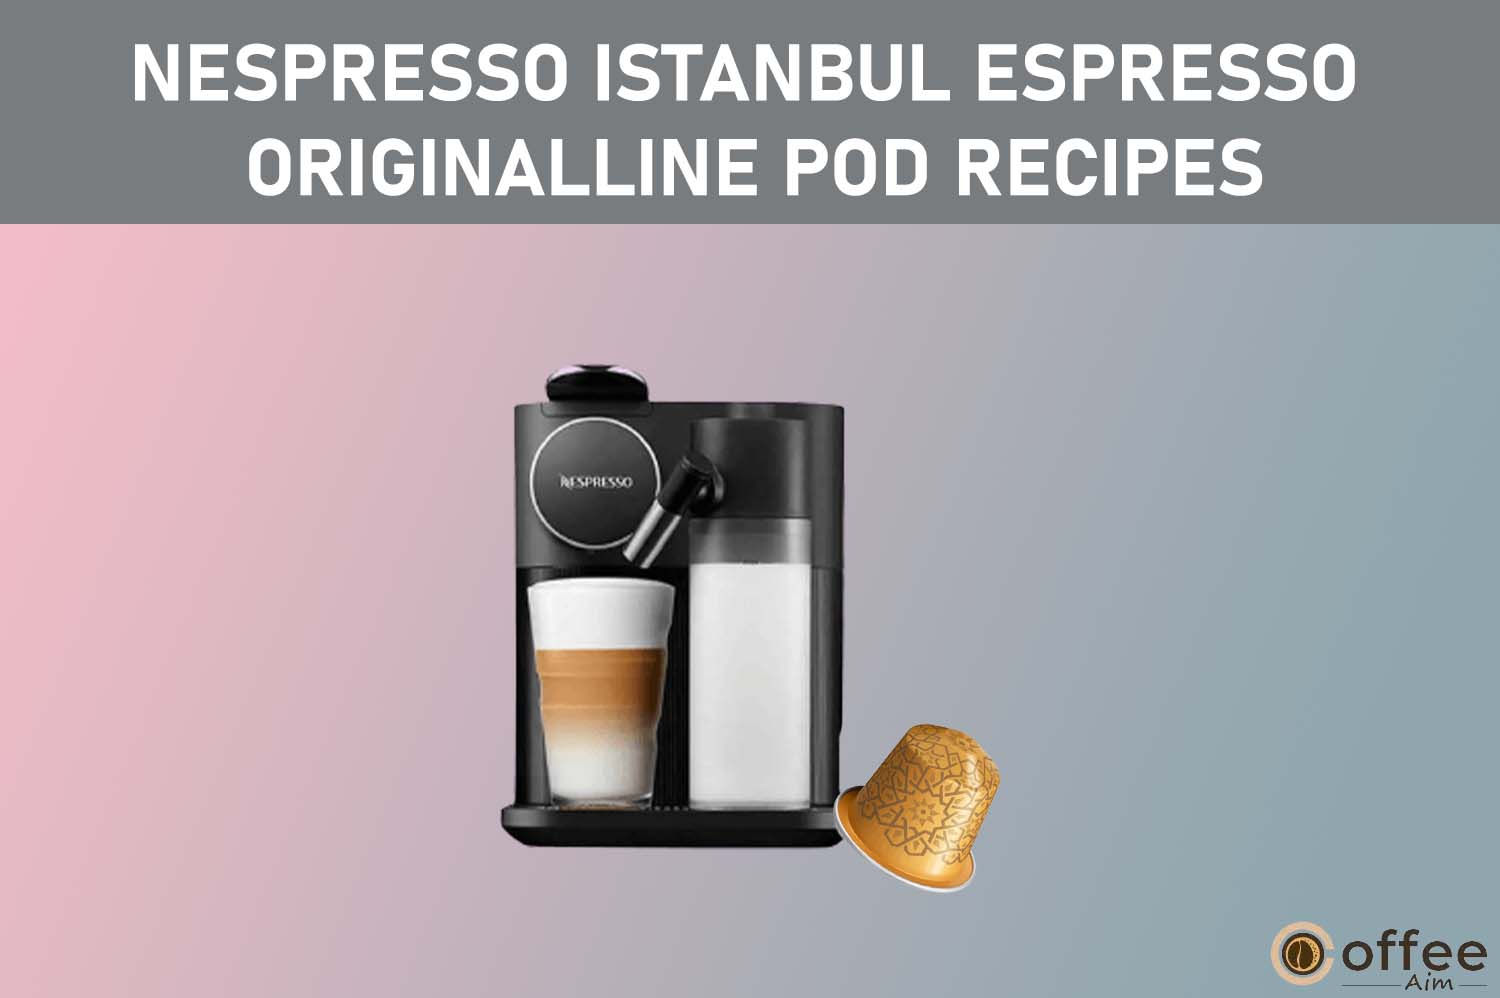 Featured image for the article "Nespresso Istanbul Espresso OriginalLine Pod Recipes"